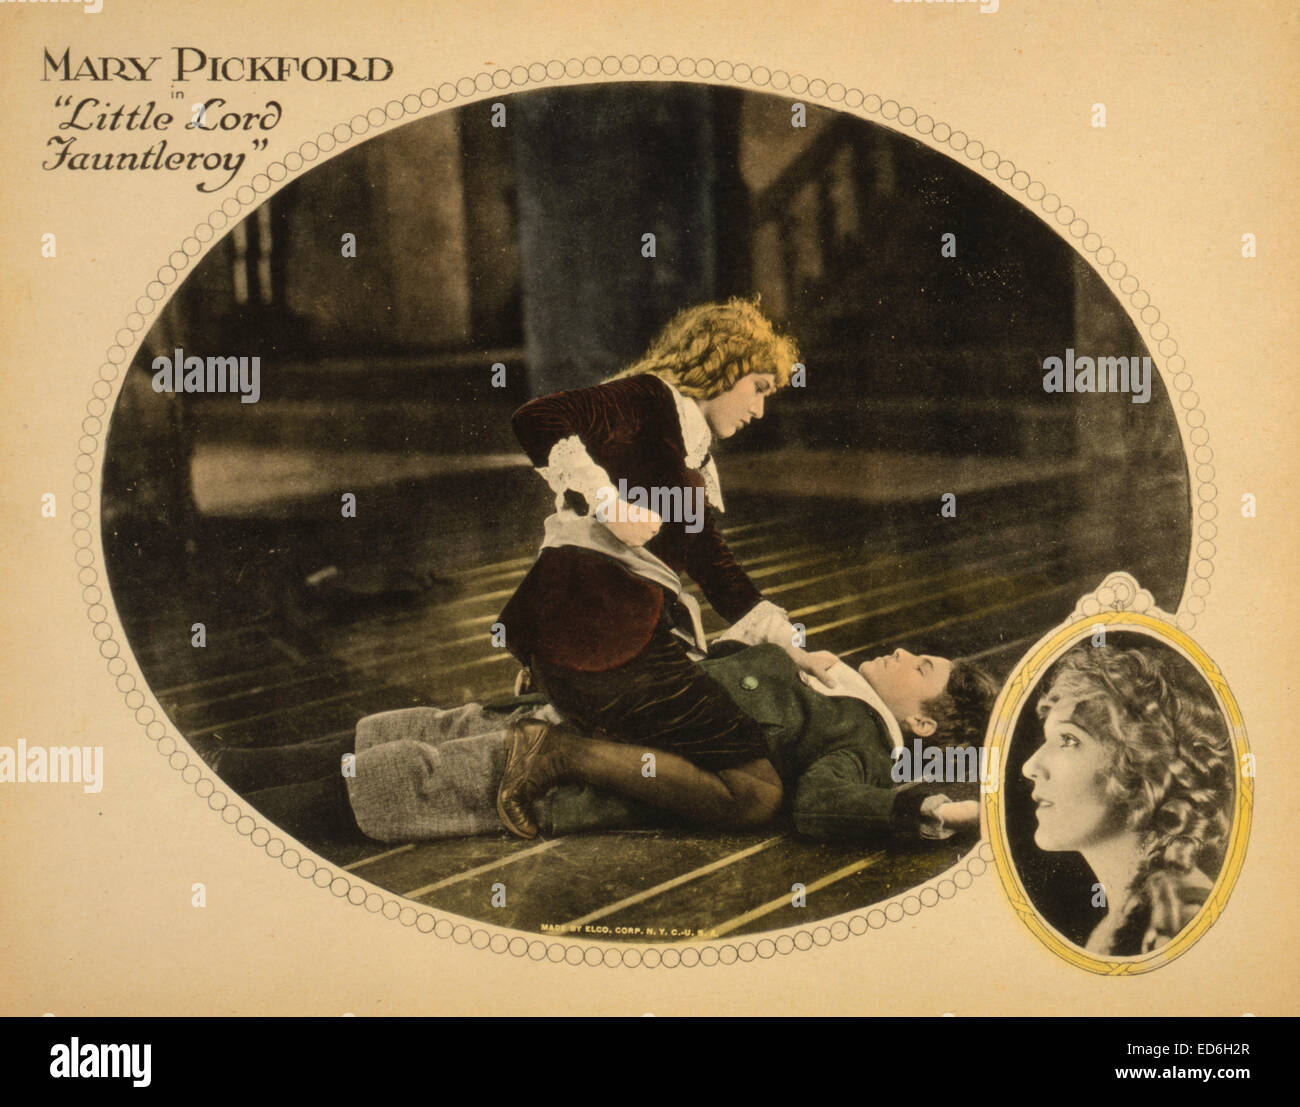 Lobby-Karte zeigt Mary Pickford zu Schauspieler Francis Marion während einer Szene aus dem Film "Little Lord Fauntleroy," 1921 Punsch Stockfoto